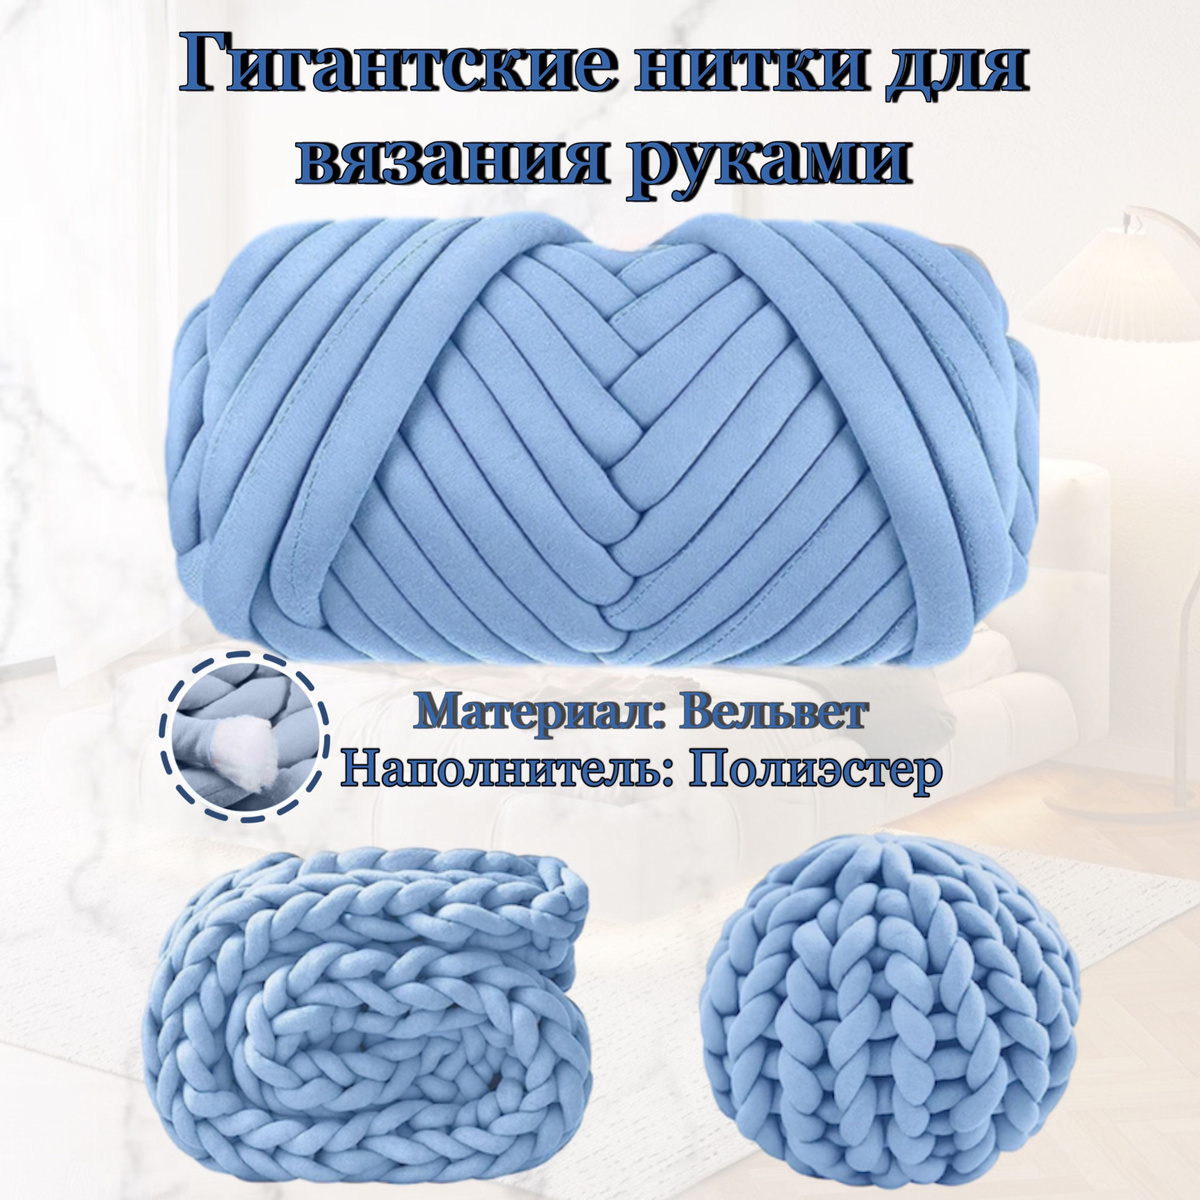 Крупная пряжа для вязания руками-1 кг. Толщина нити 3 см. Цвет: голубой. Наверняка вы не раз замечали красивые фото заграничных интерьеров стильных домов, на которых виднеются роскошные пледы с гигантскими петлями. Такая техника крупной вязки называется «чанки» (от англ. "chunky knit" – крупное вязание).  Чанки-пледы смотрятся красиво, оригинально, уютно и прекрасно отражают такую модную сейчас философию хюгге – скандинавскую философию счастья и комфортной жизни.  К счастью благодаря нашим большим ниткам для вязания вы сможете создать своими руками подобный шедевр